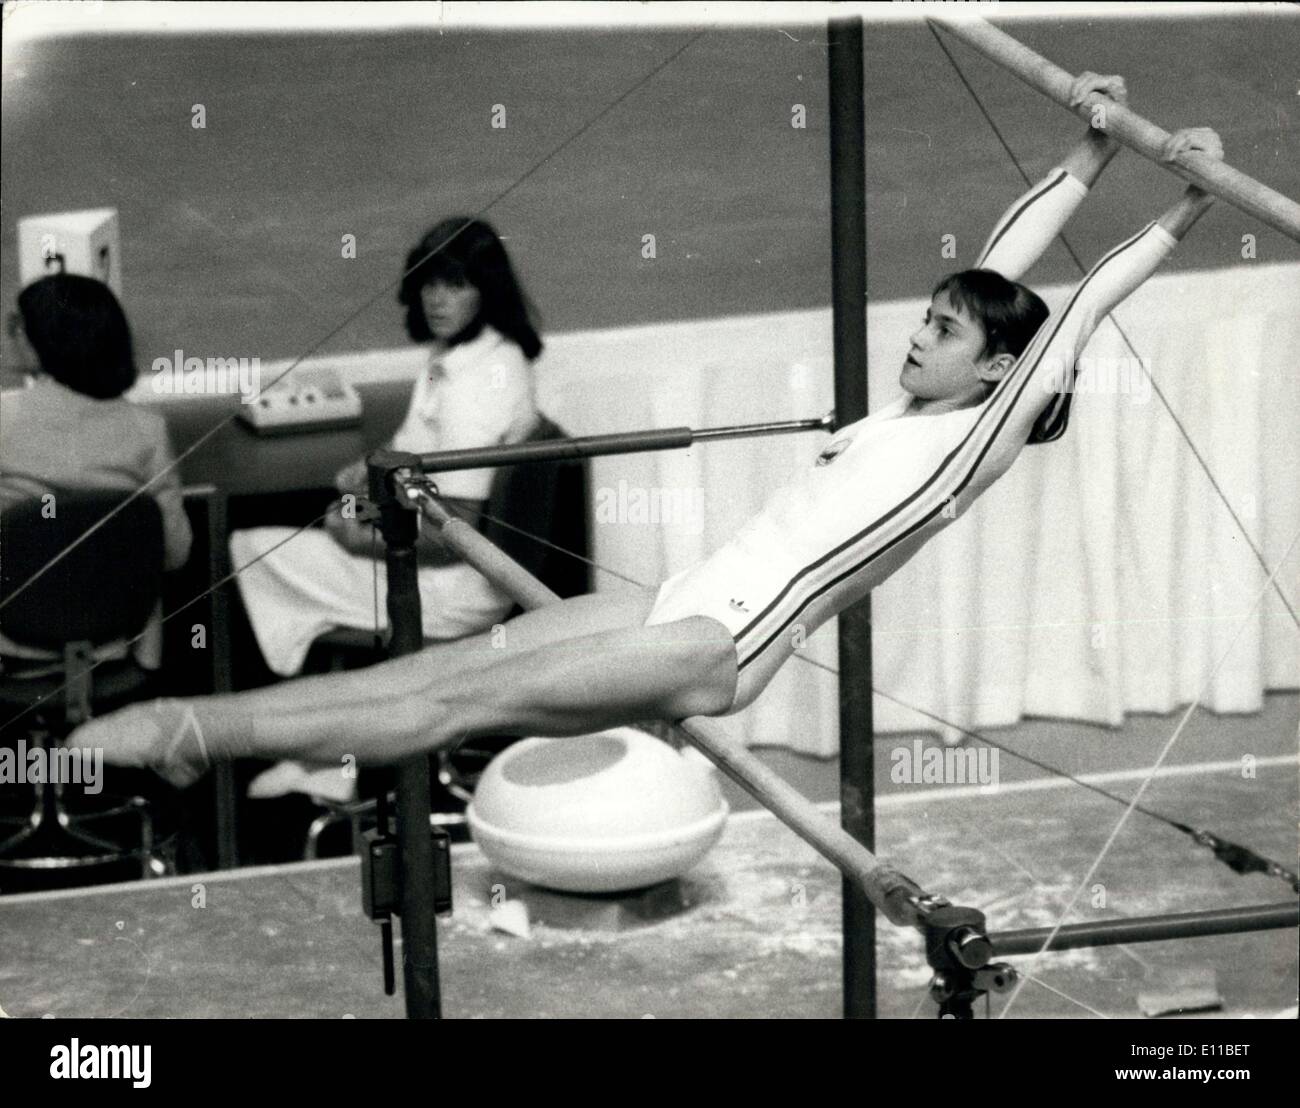 Les enfants de la Roumanie olympique de gymnastique Veste-Montréal Jeux olympiques 1976 COMANECI 